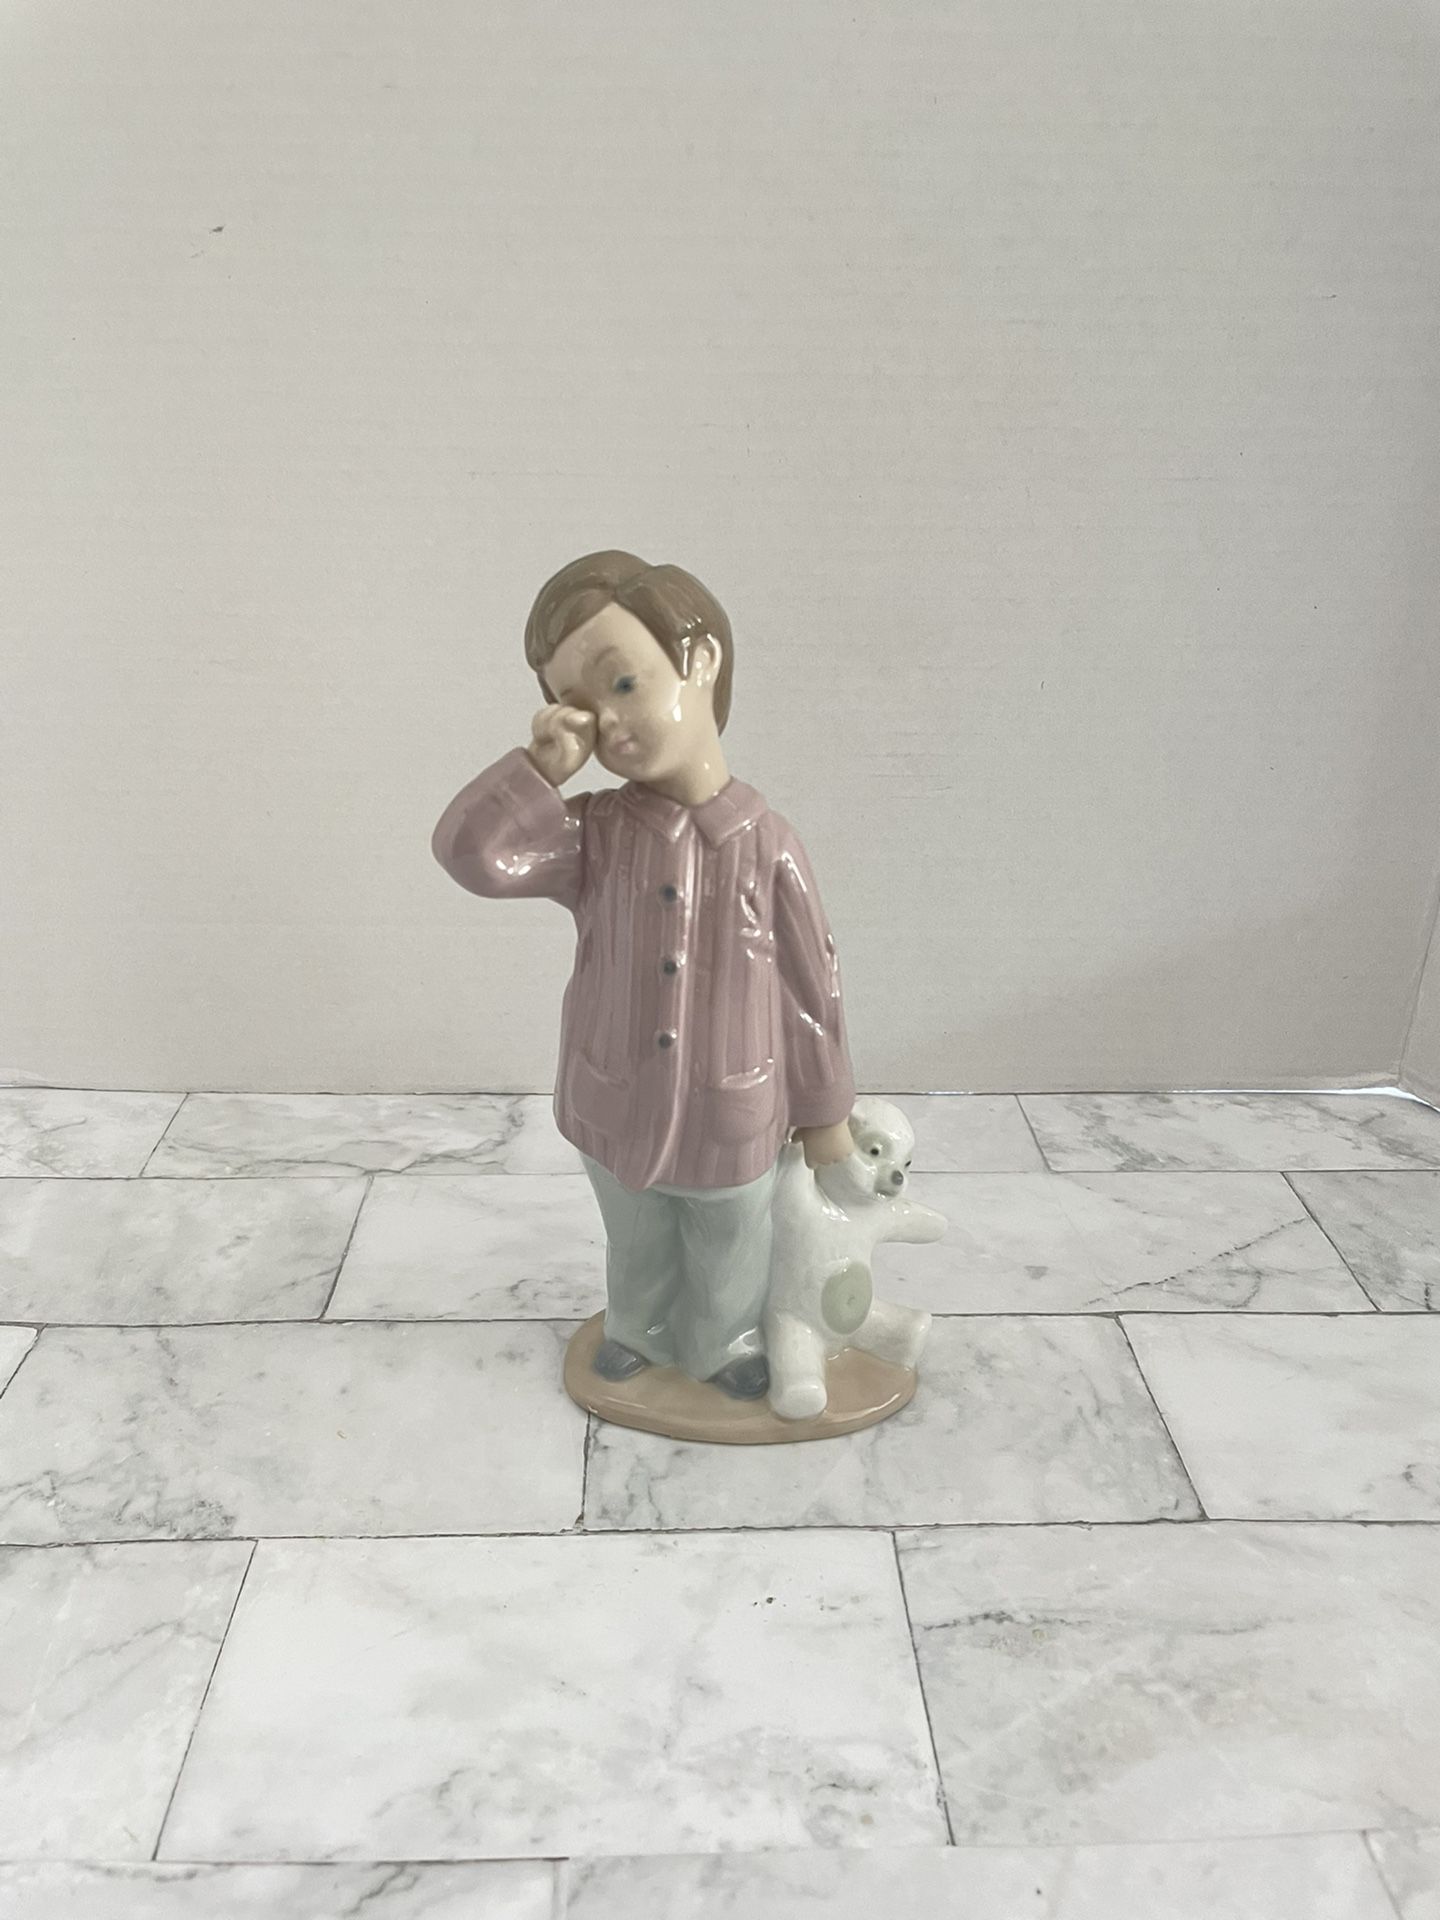 Nao / Lladro Porcelain Figurine 1139 Sleepy Head Boy with Teddy Bear